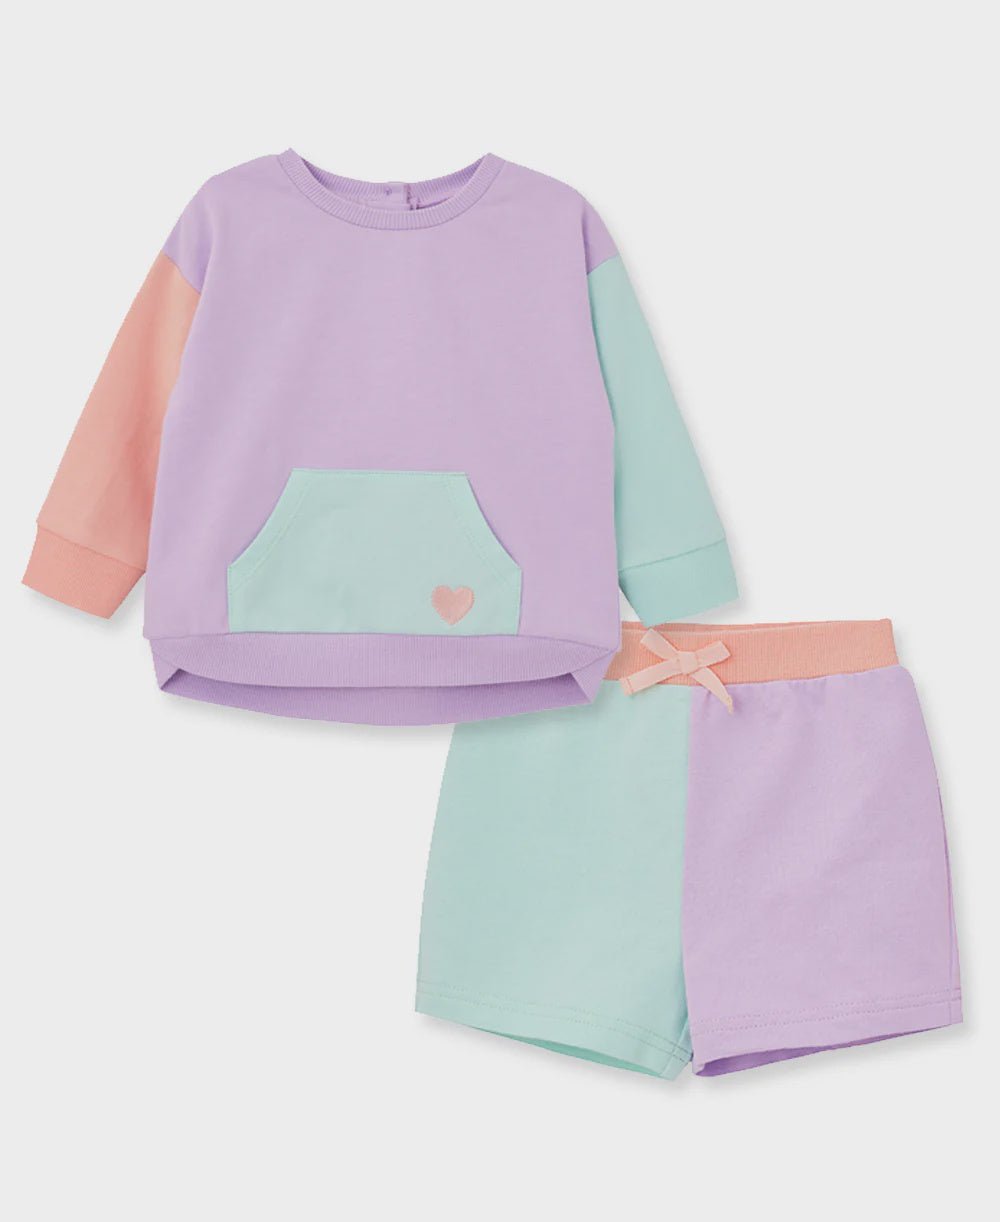 Colorblock Active Short Set - Lush Lemon - Children's Clothing - Little Me - 745644901893